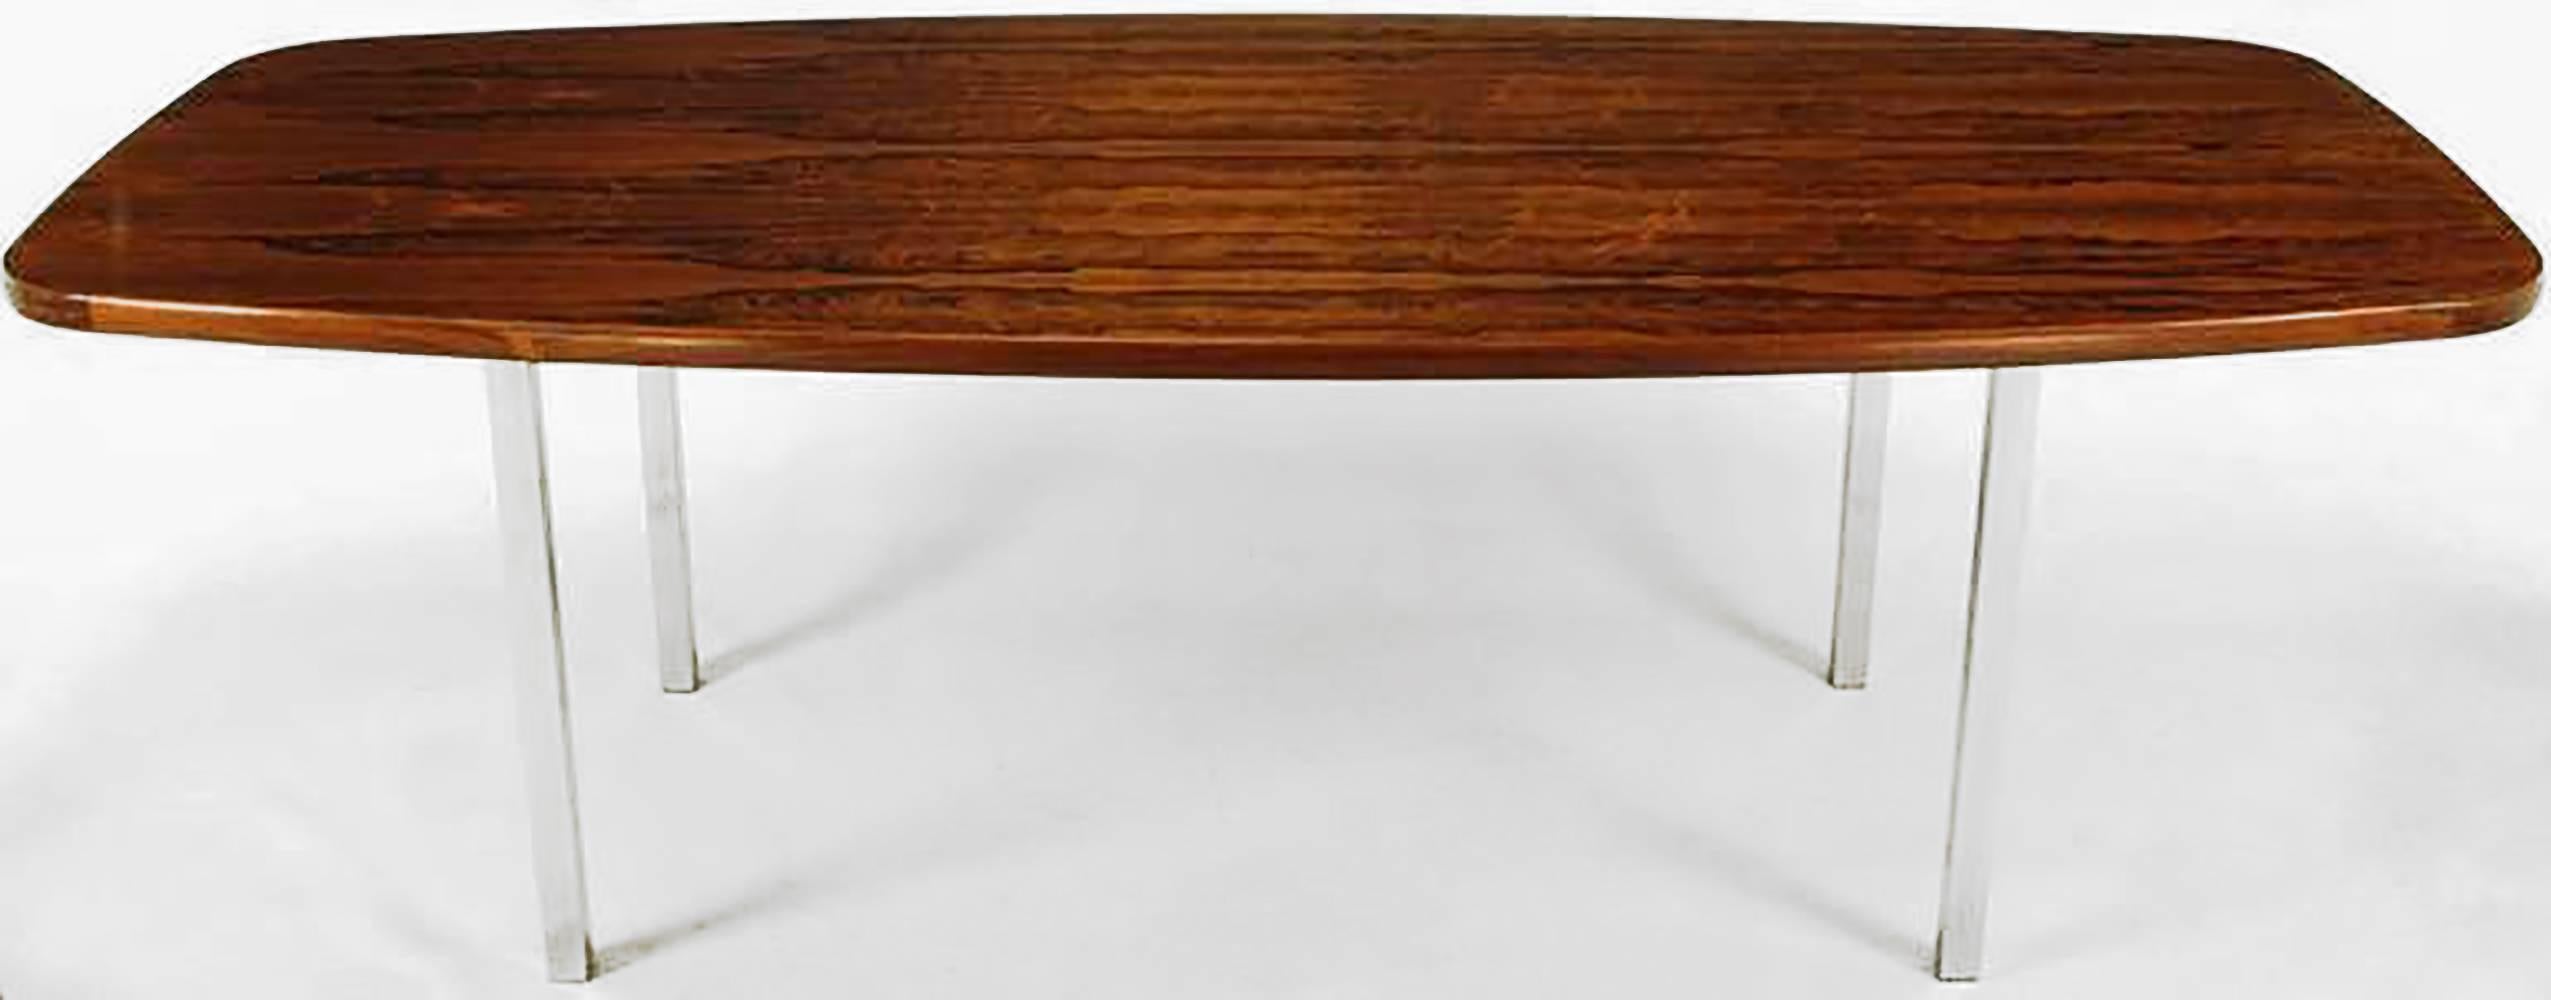 Dunbar Esstisch aus Palisanderholz mit quadratischen Beinen aus poliertem Edelstahl. Er würde sich auch hervorragend als großer Schreibtisch oder kleiner Konferenztisch eignen. Hat eine maßgeschneiderte Glasplatte, die auf Wunsch über das Holz